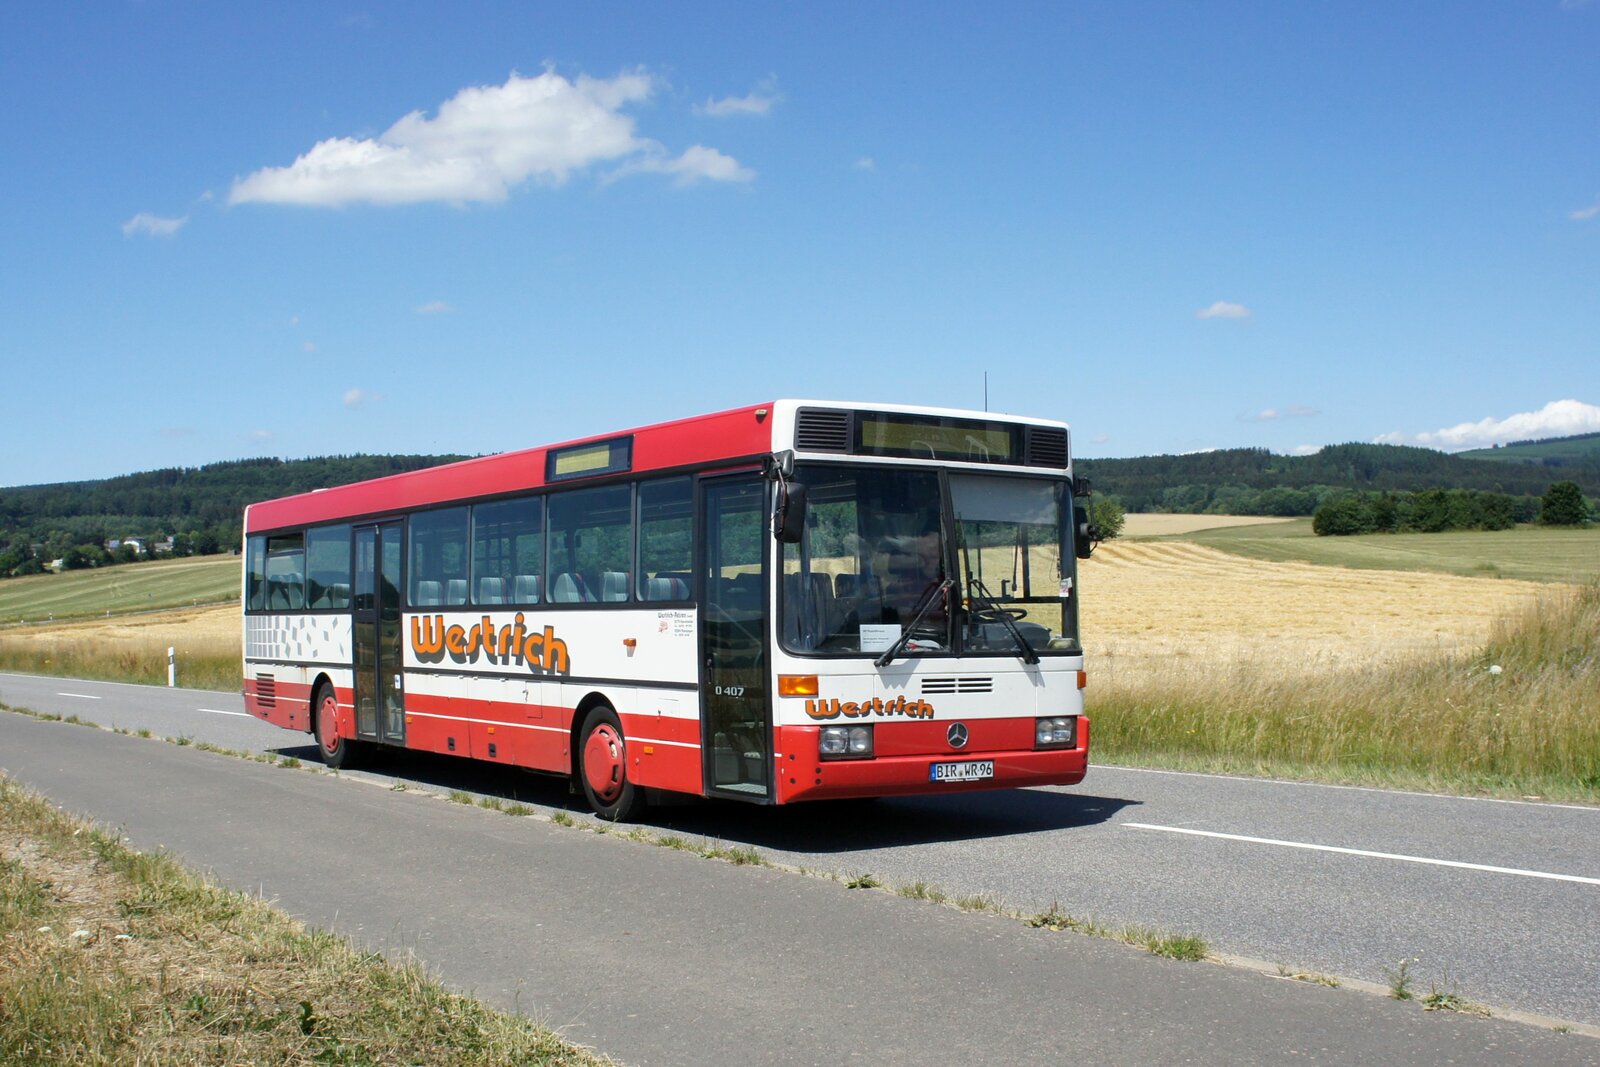 Bus Rheinland-Pfalz: Mercedes-Benz O 407 (BIR-WR 96) vom Omnibusbetrieb Westrich Reisen GmbH, aufgenommen im Juli 2022 in der Nähe von Kempfeld, einer Ortsgemeinde im Landkreis Birkenfeld.